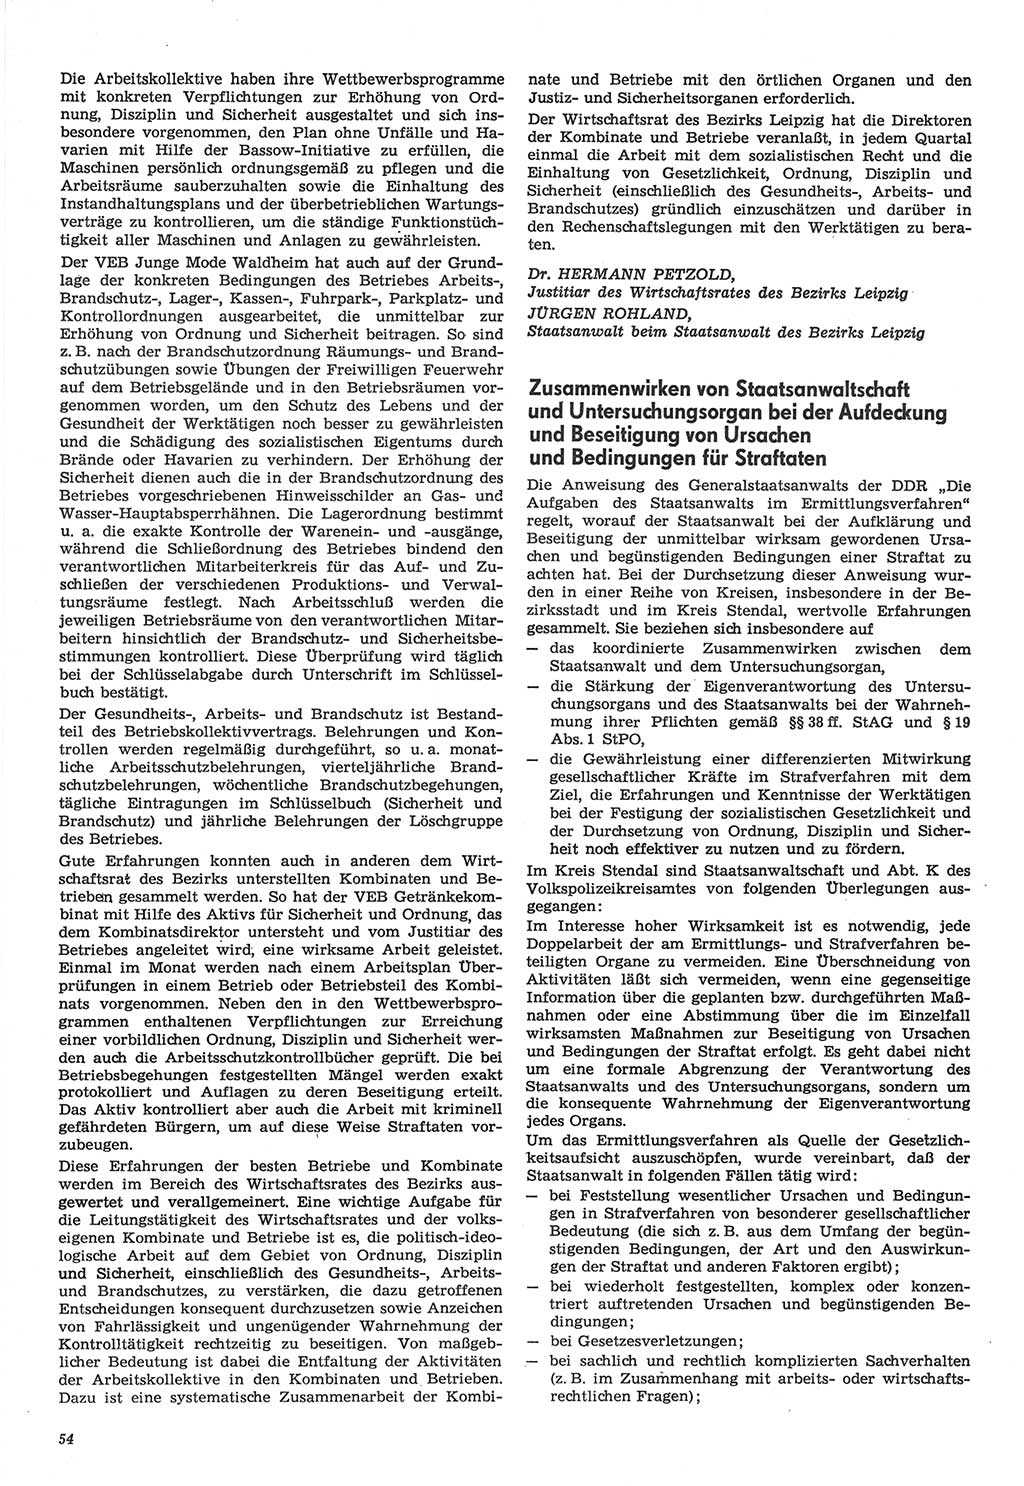 Neue Justiz (NJ), Zeitschrift für Recht und Rechtswissenschaft-Zeitschrift, sozialistisches Recht und Gesetzlichkeit, 31. Jahrgang 1977, Seite 54 (NJ DDR 1977, S. 54)